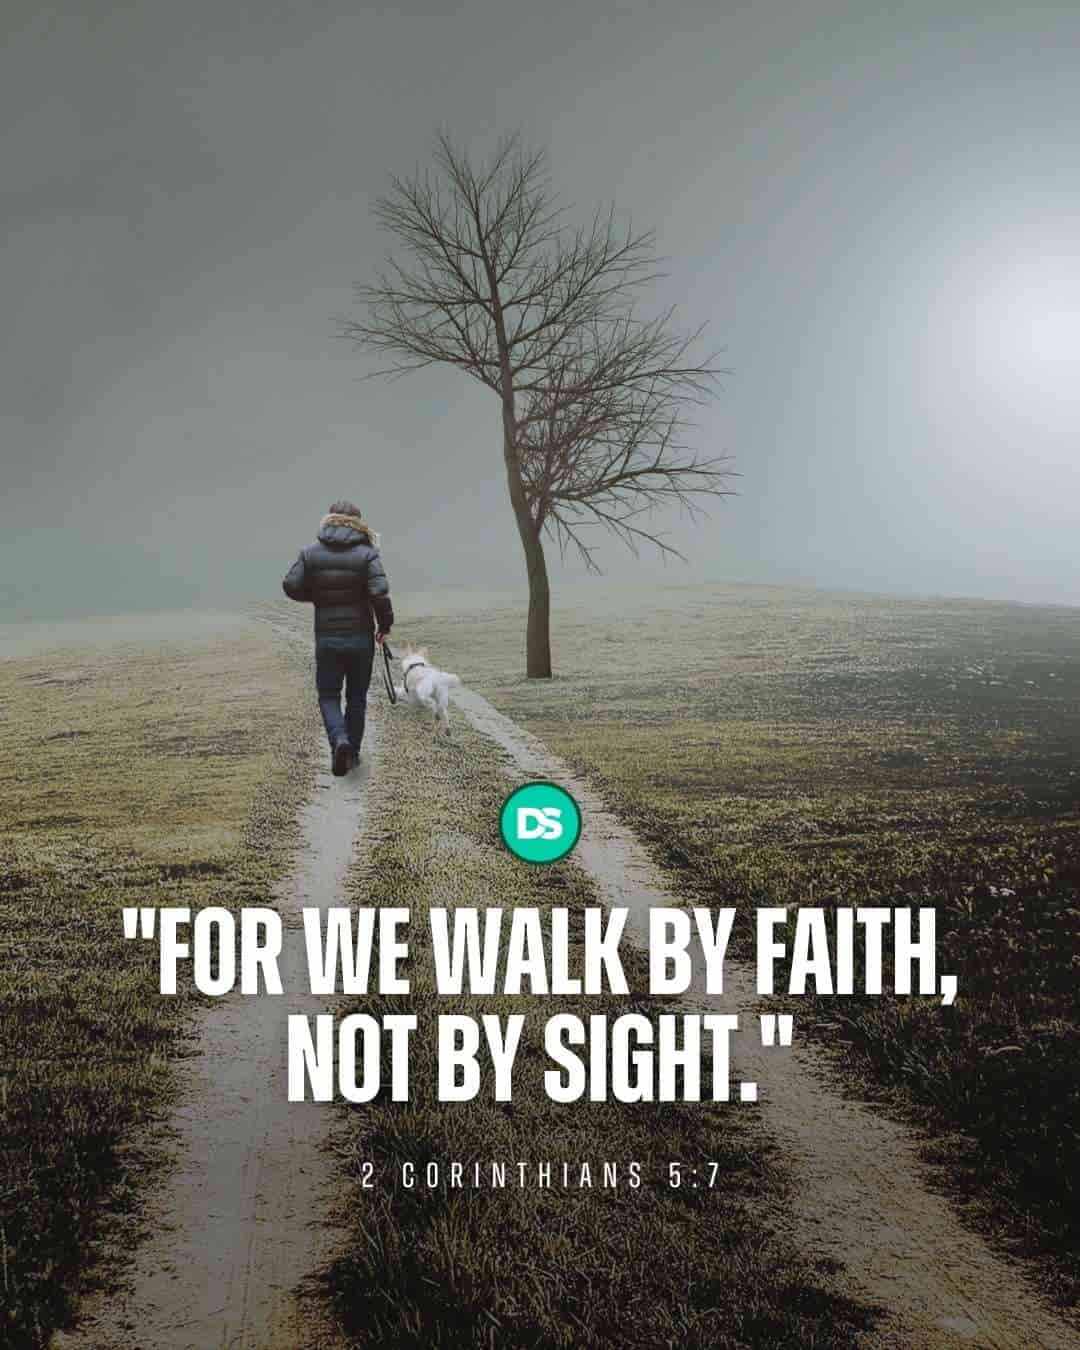 Walk by faith - 2 Corinthians 5:7